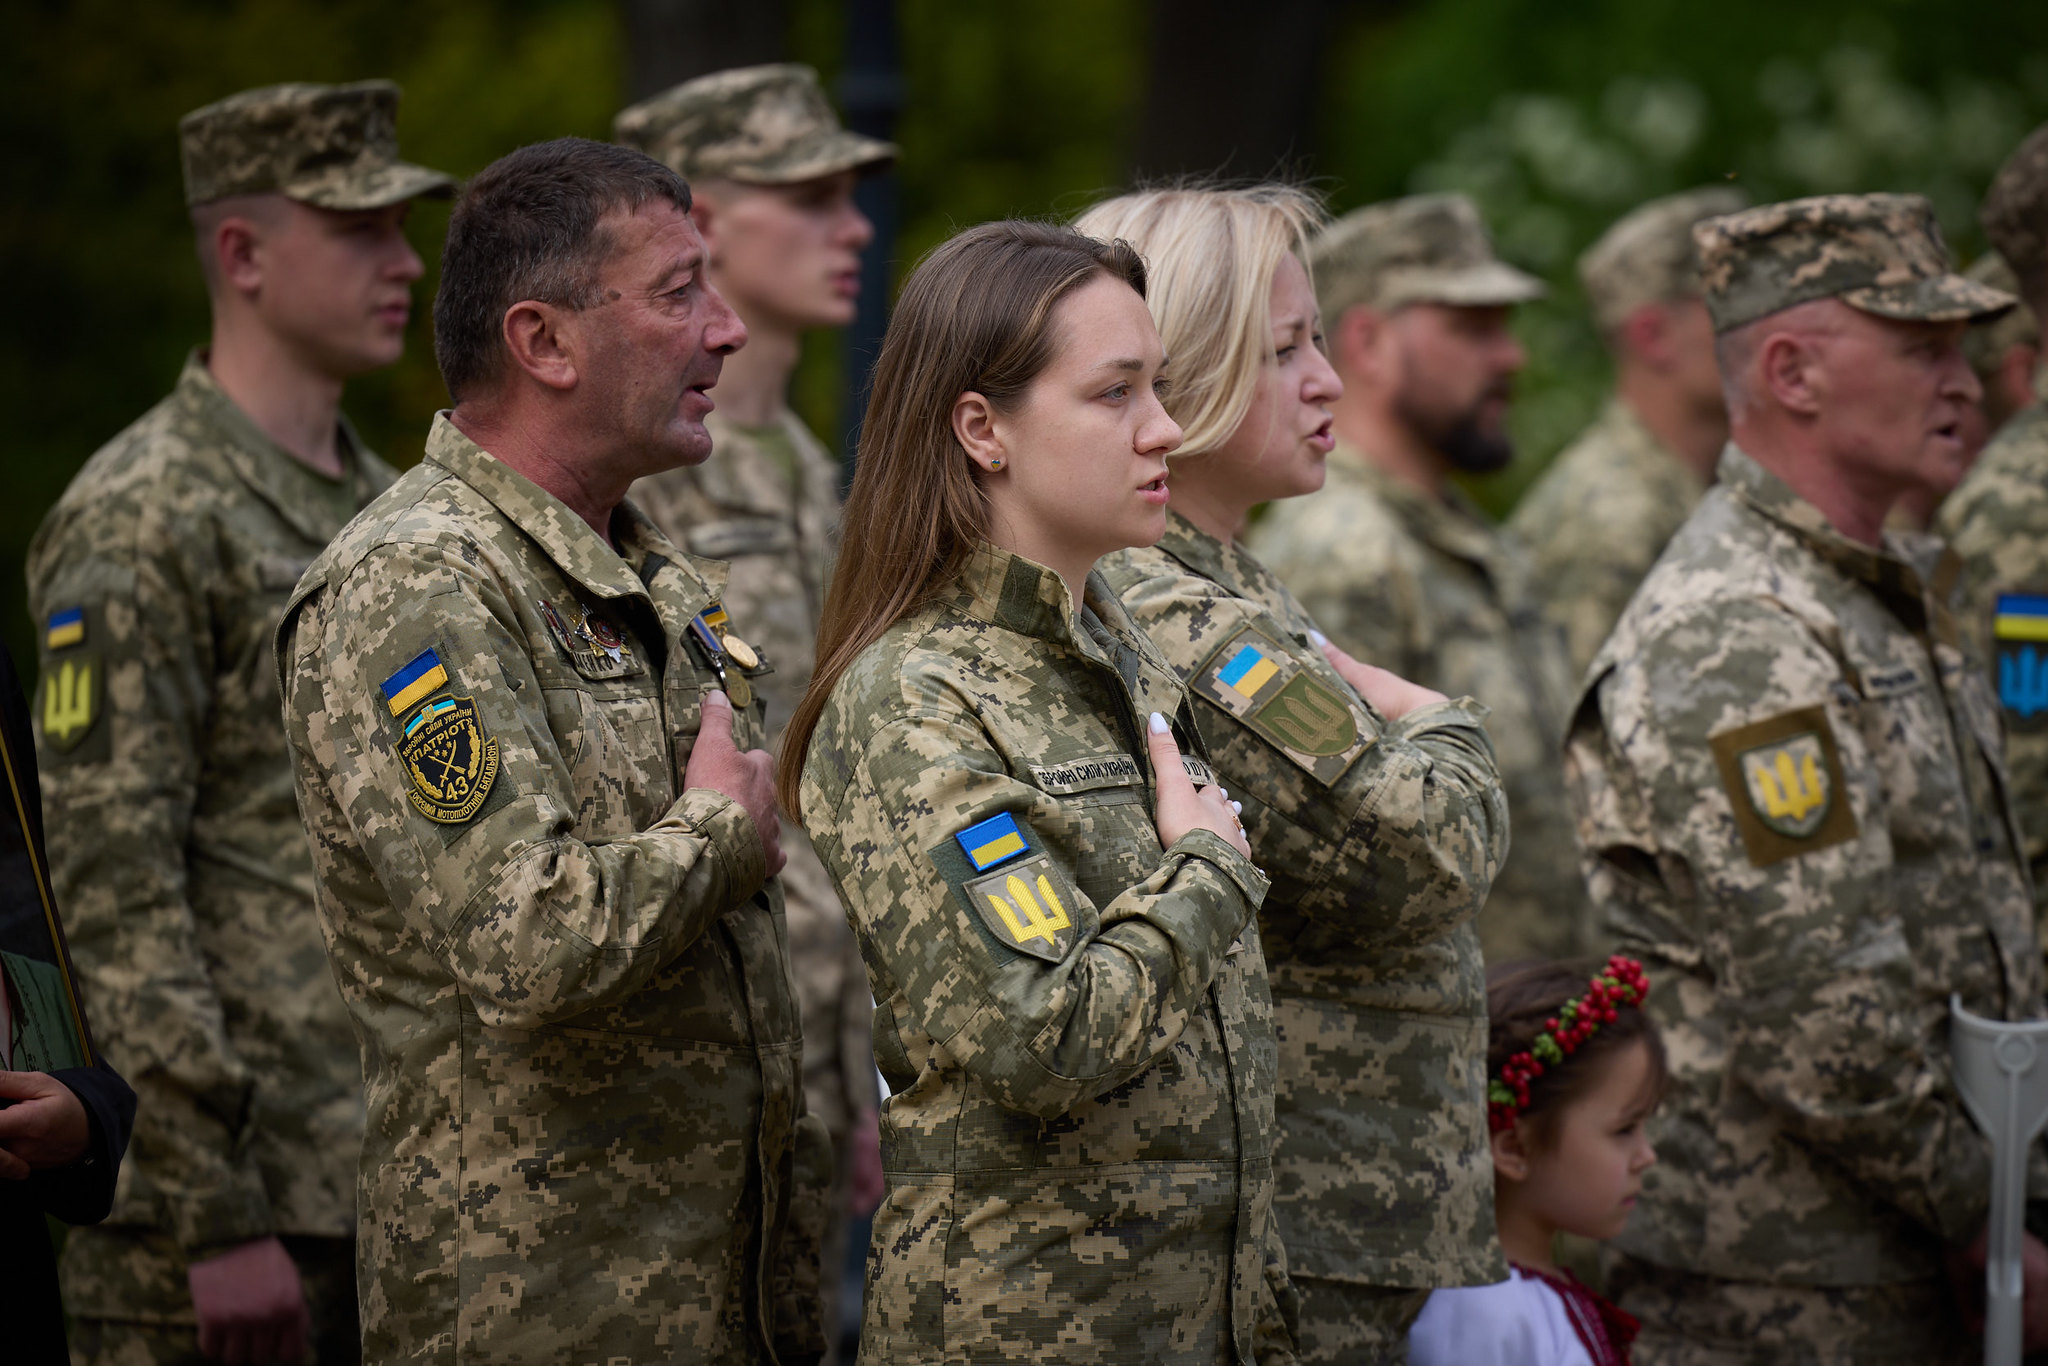 soldati ucraini alllineati, da sinistra a destra tre uomini, due donne e tre uomini (tutti di profilo destro). L'uomo al centro e le due donne hanno la mano sul petto.